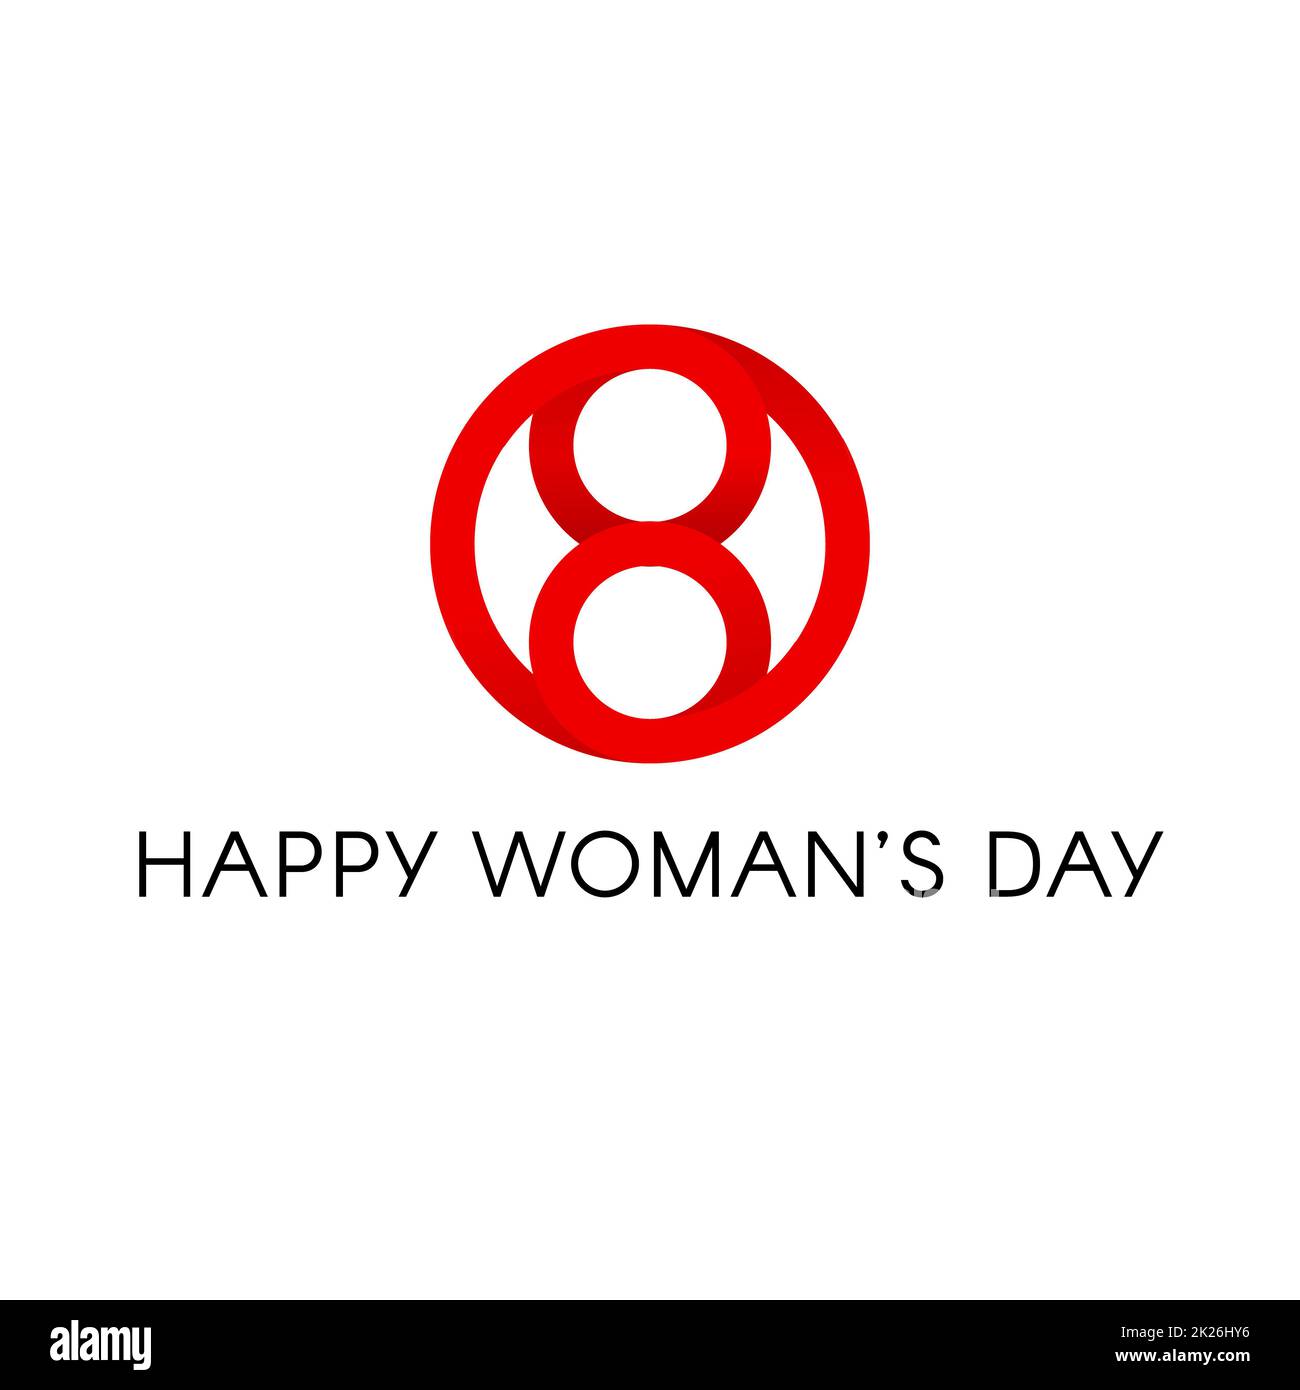 Roter Kreis Form, glücklichen Tag der internationalen Frauen unterzeichnen, abstrakte minimal Vektor logo Vorlage auf weißem Hintergrund. Stockfoto